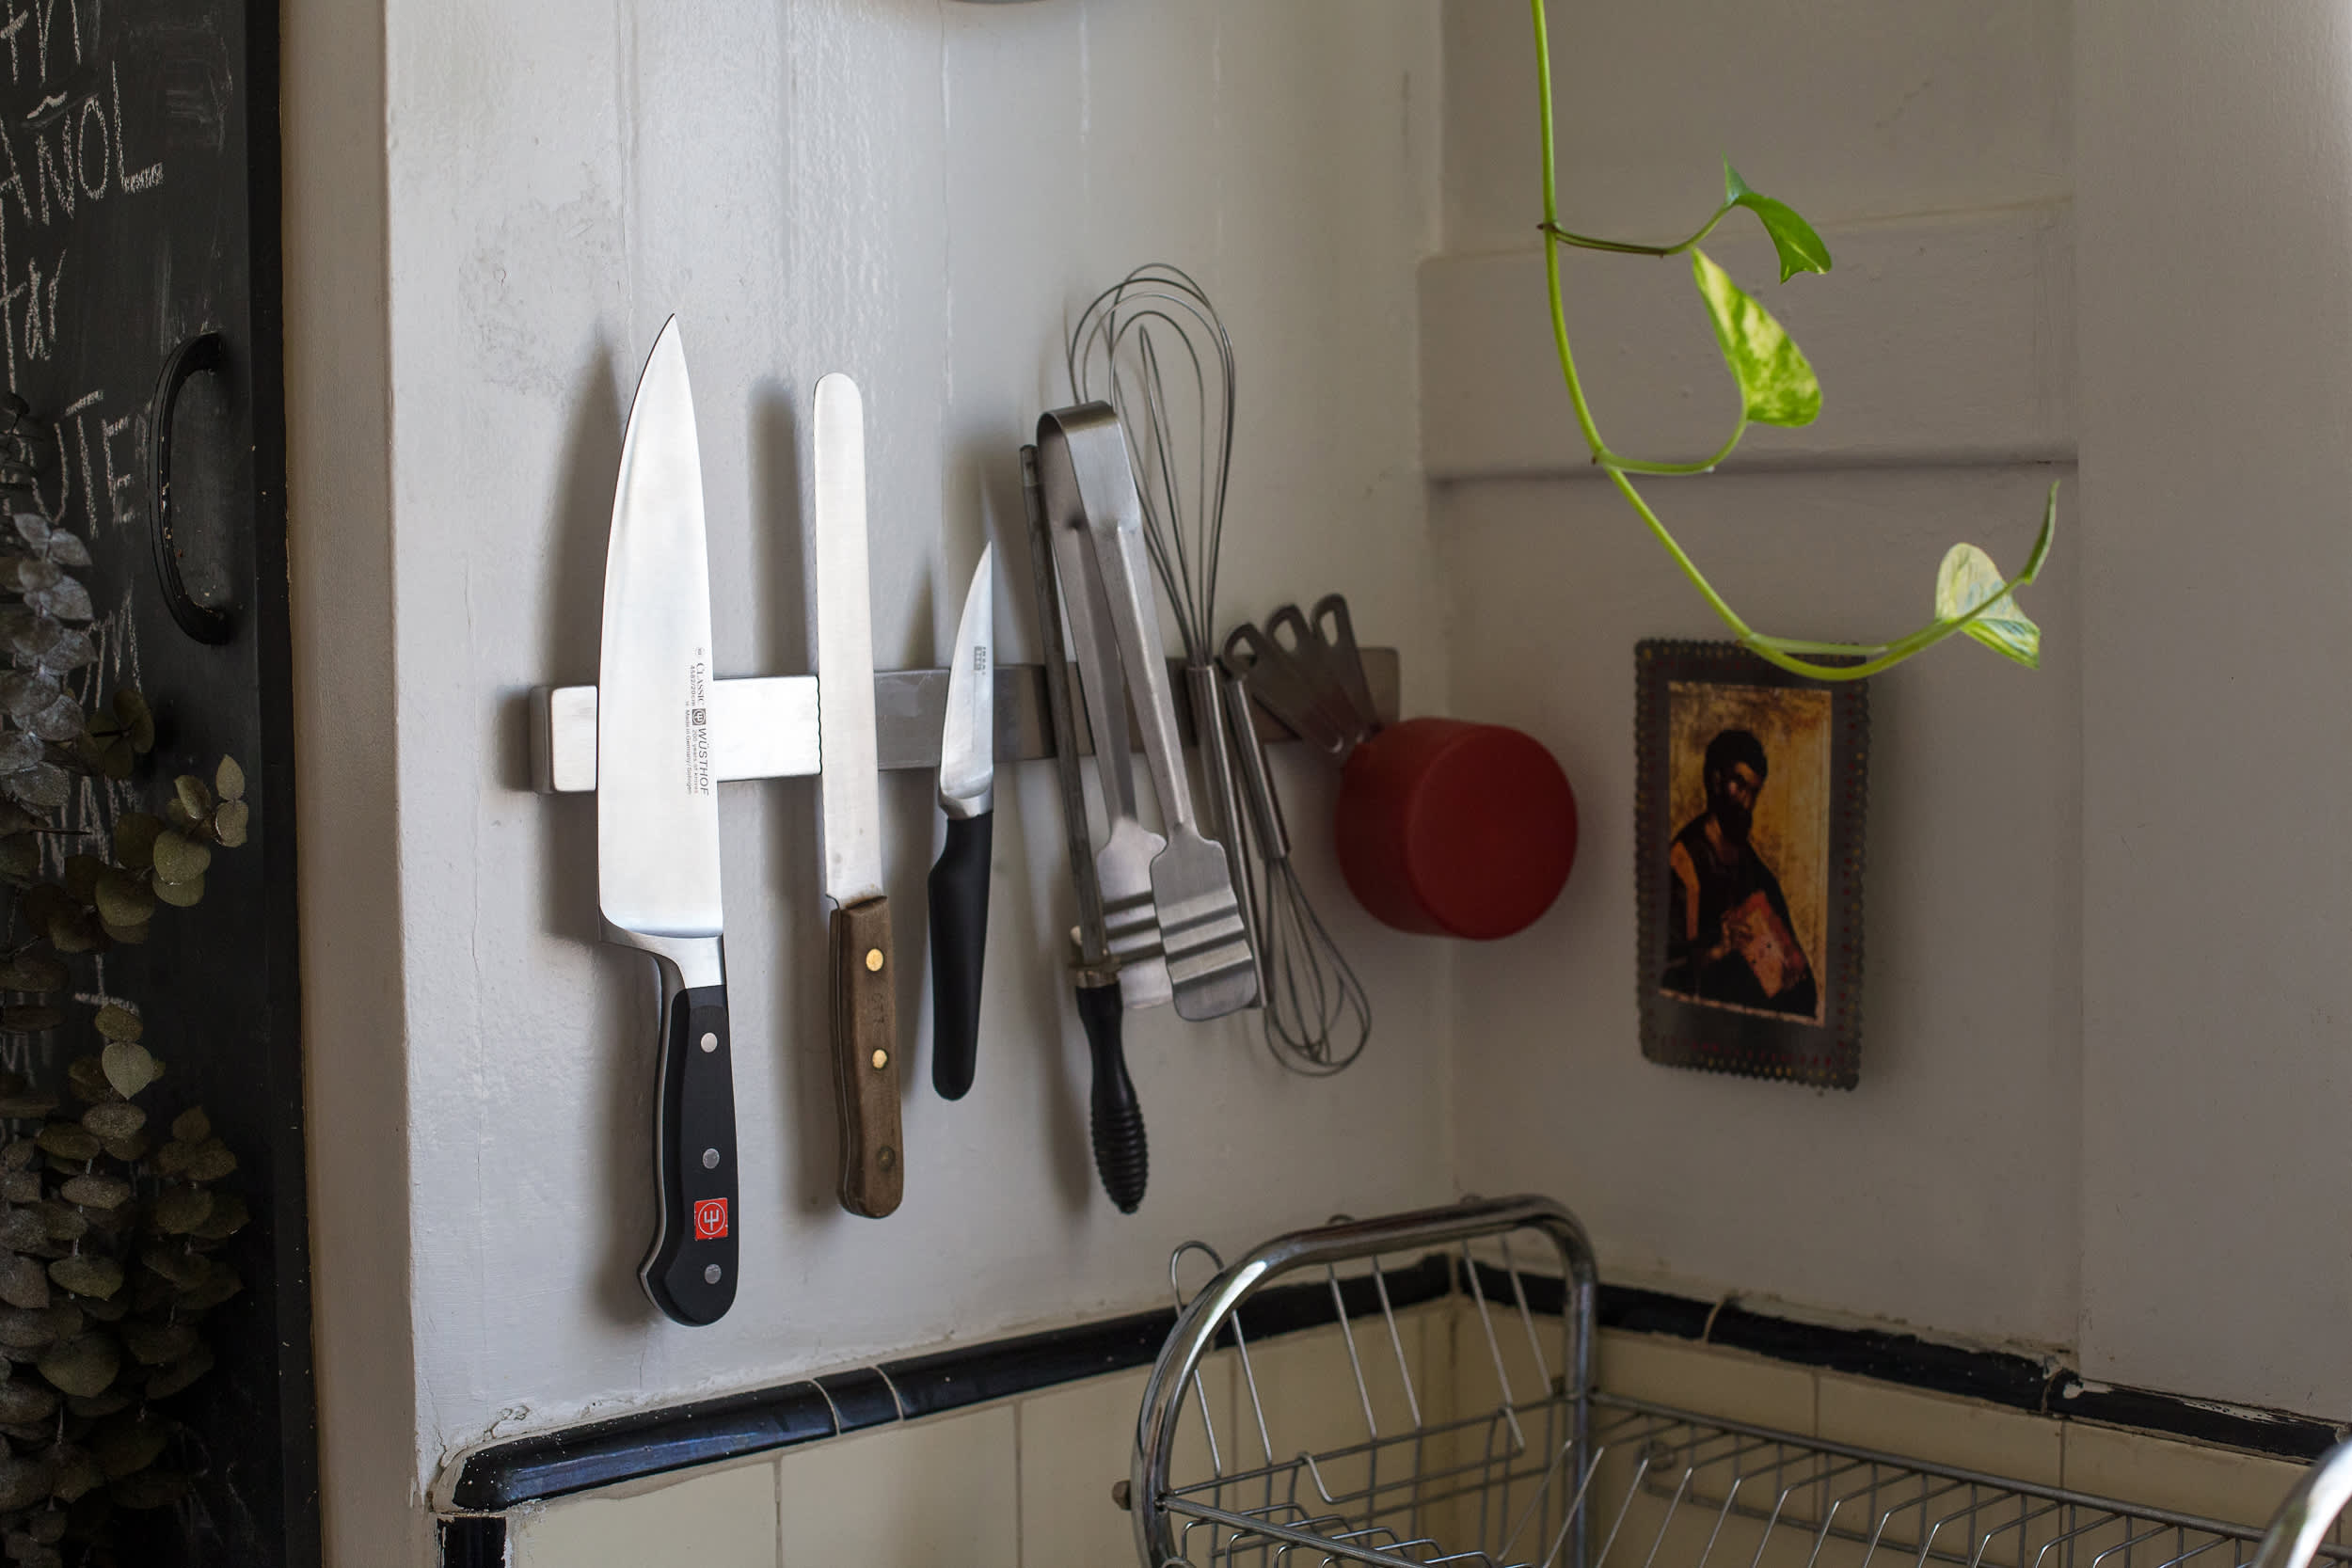 Useful Kitchen Utensils Holder Hygienic Cutlery Drainer Wear